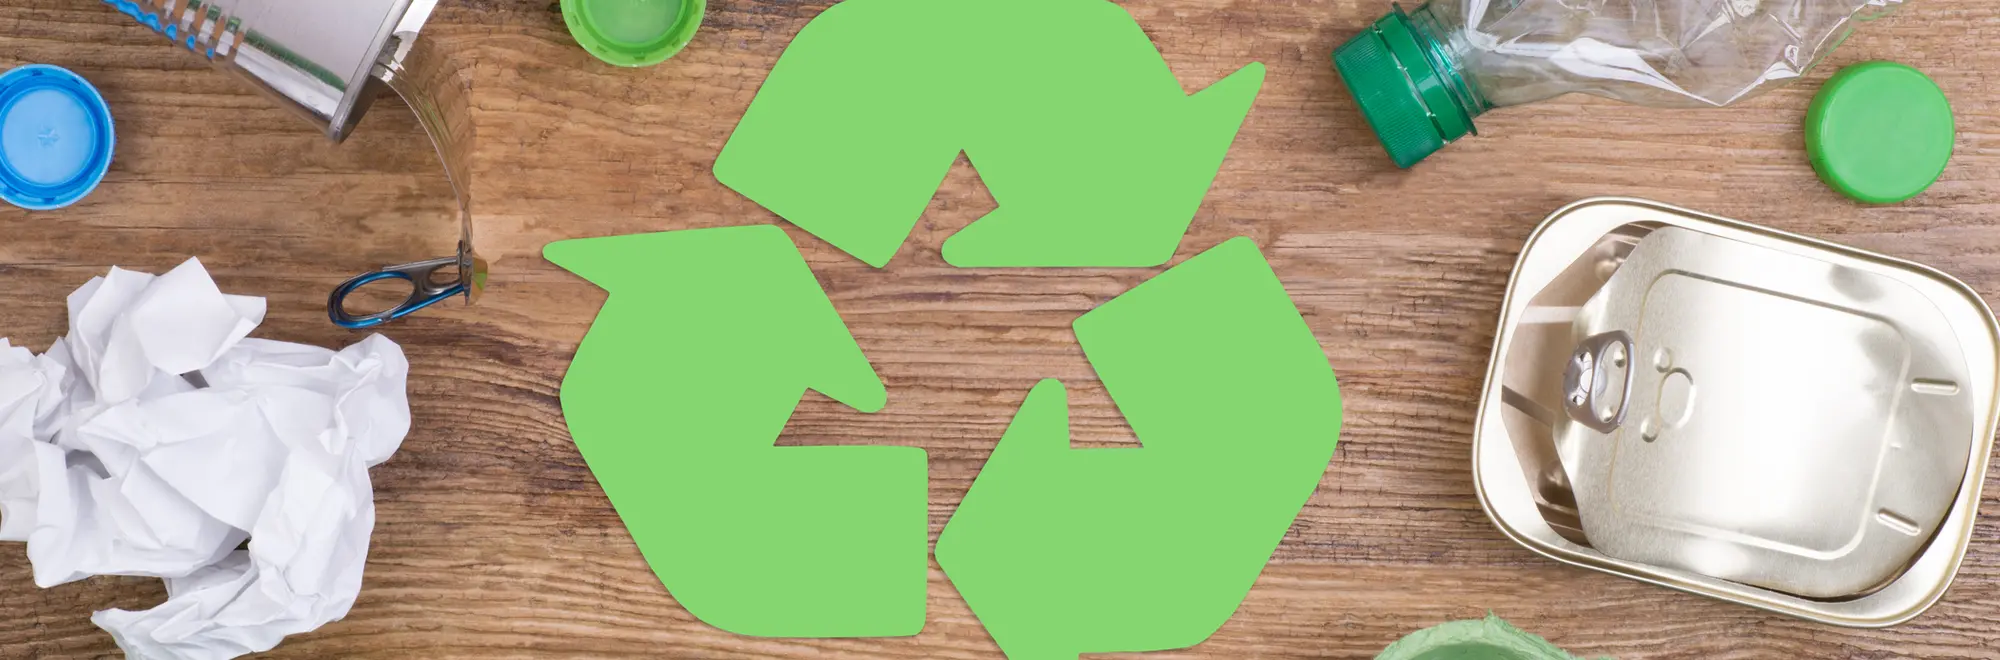 Cómo reciclar en casa y en familia